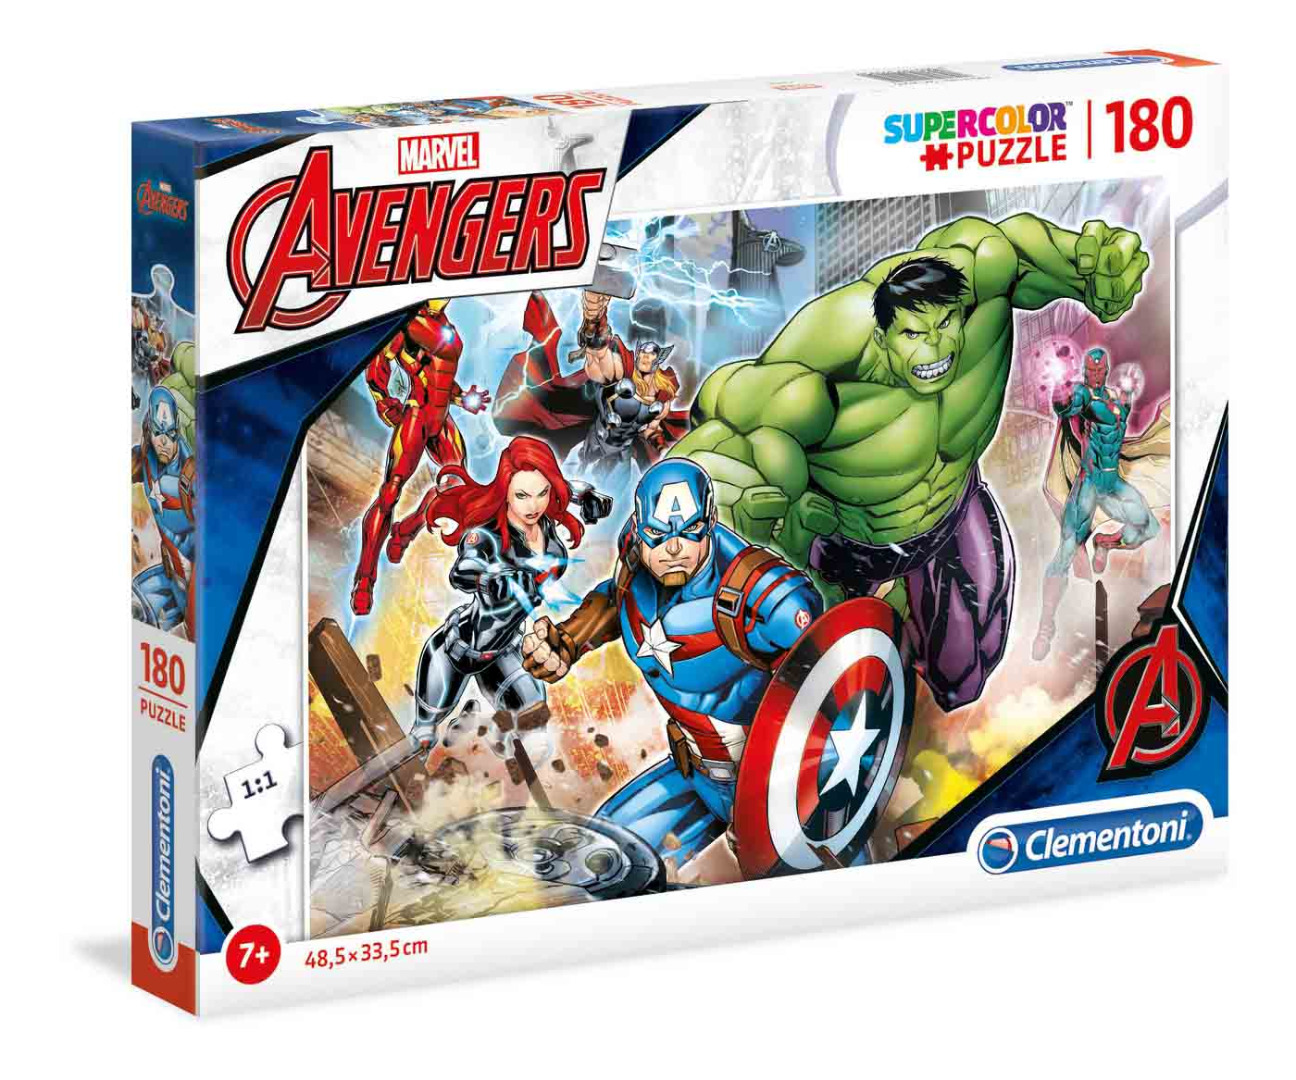 Marvel Avengers - 180 peças - Supercolor Puzzle (Para mais de 7 anos)